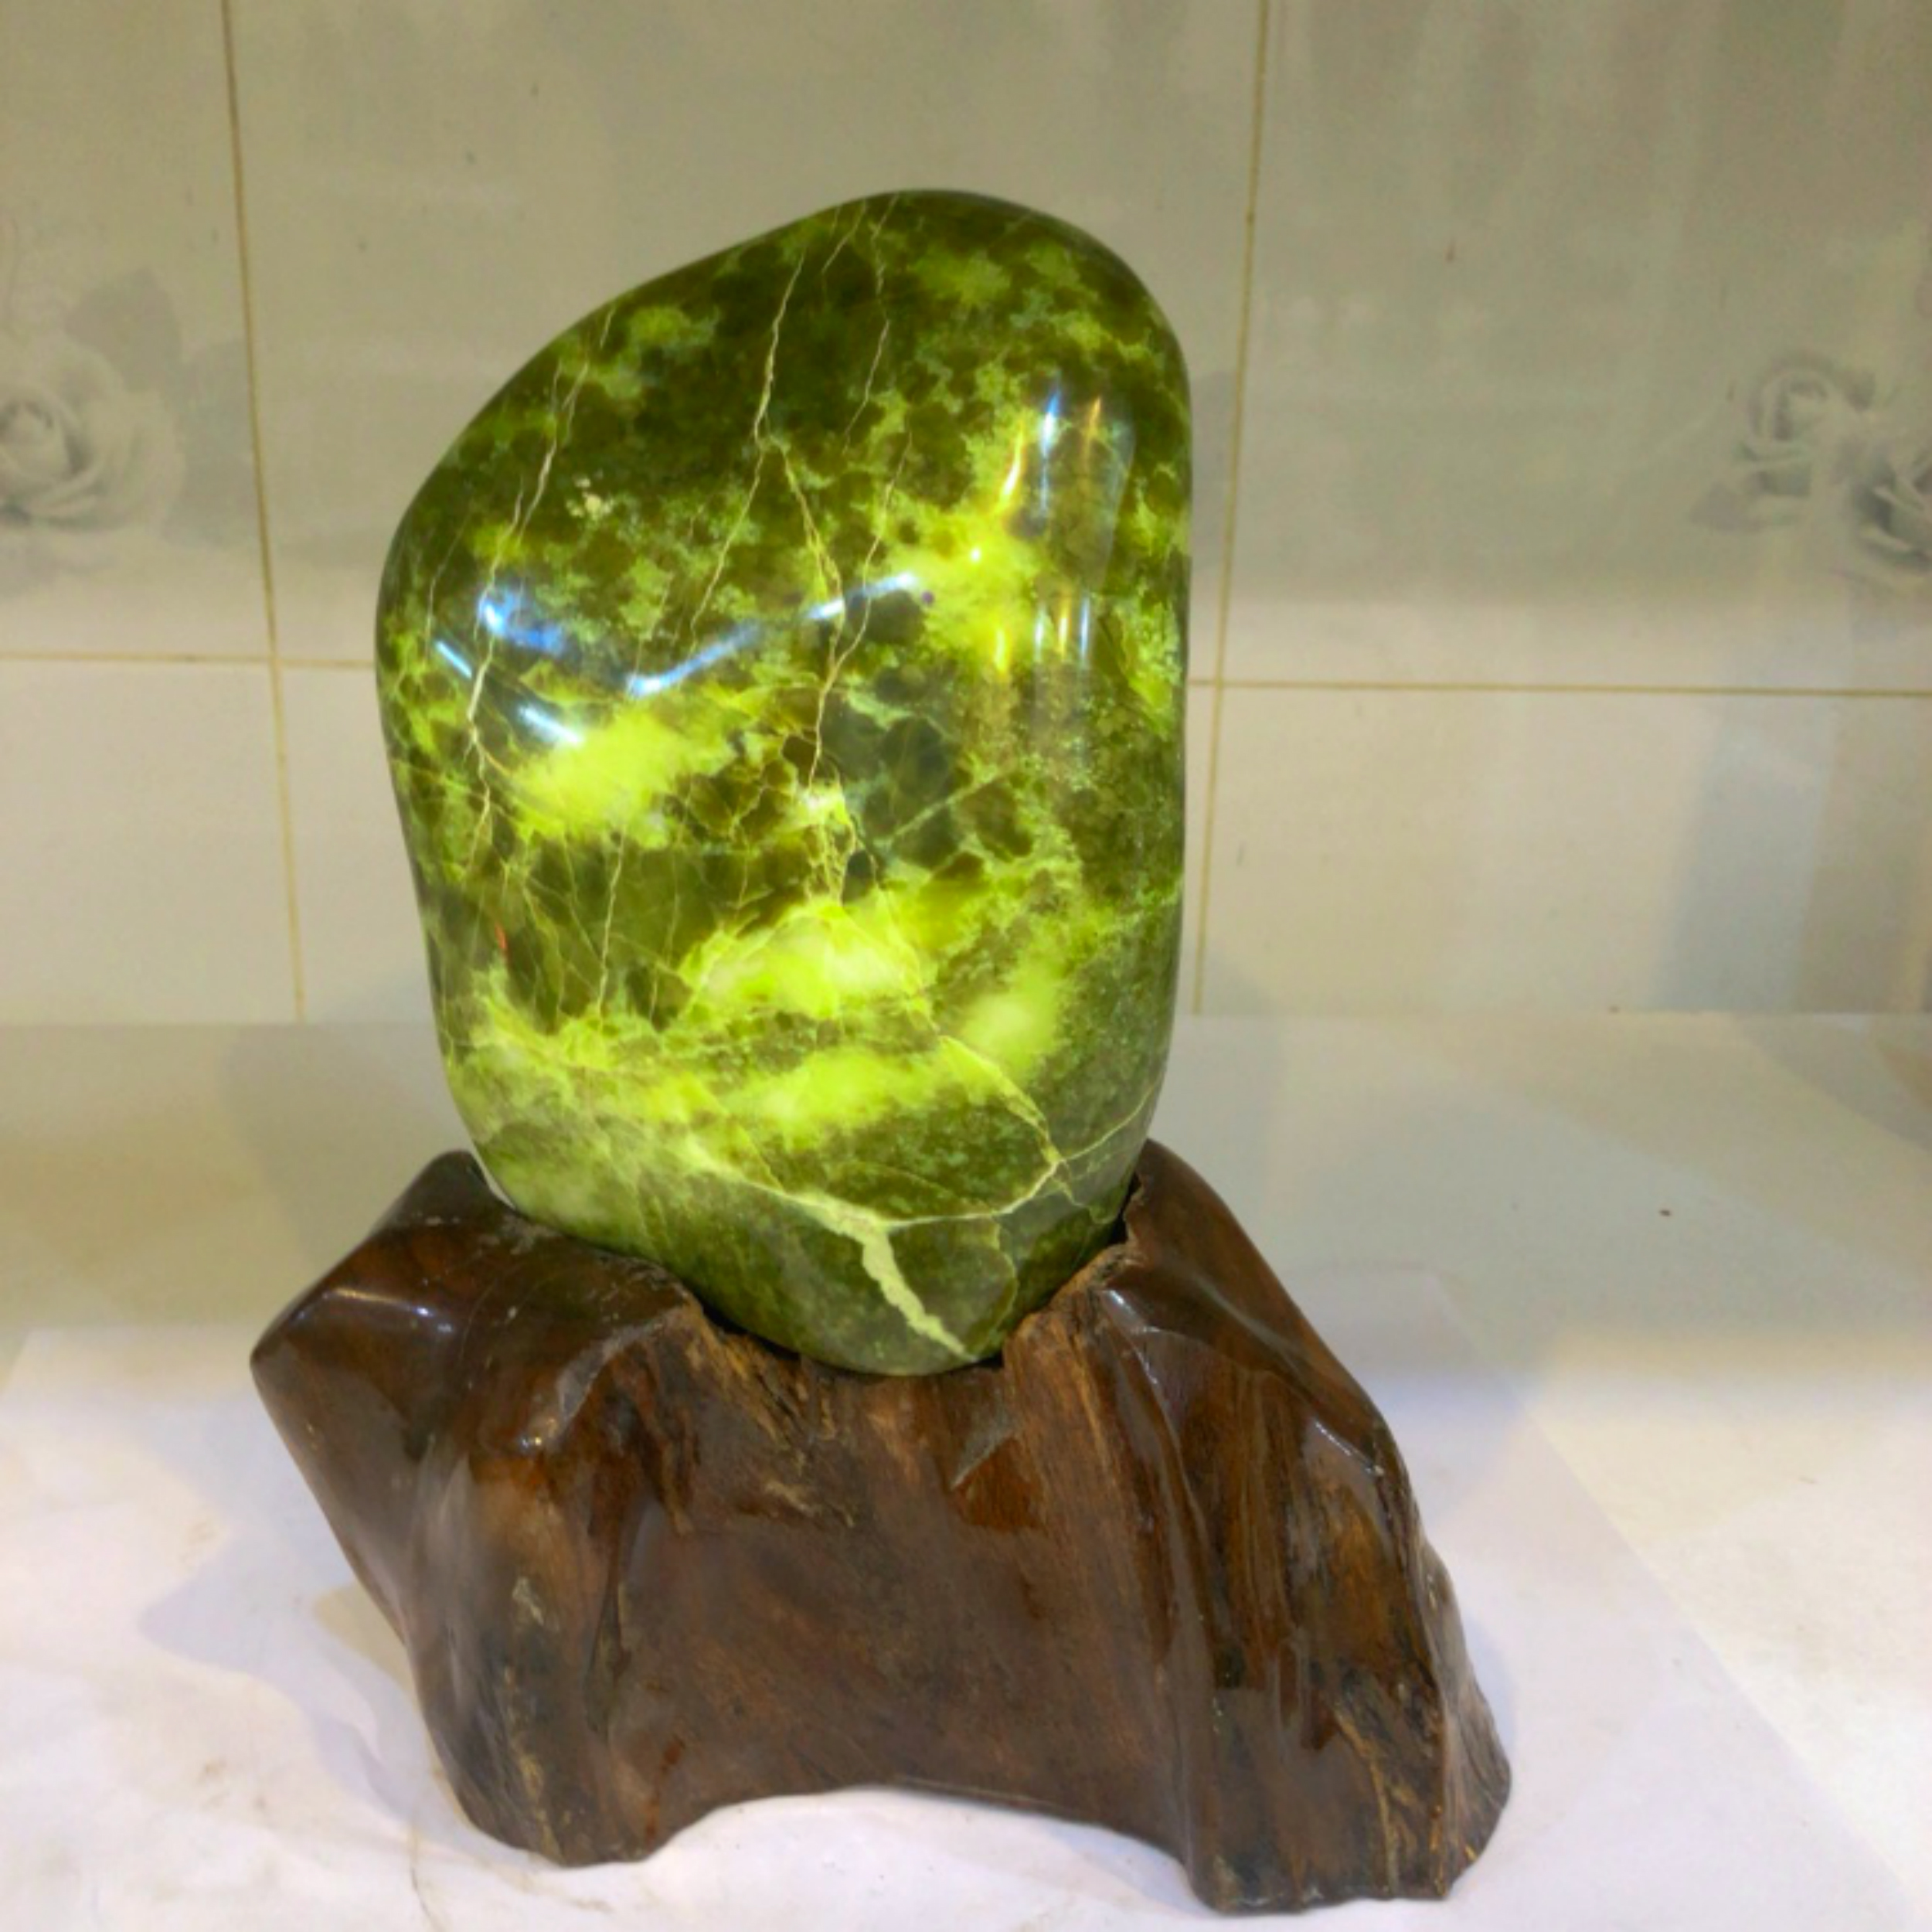 Cây đá để bàn tự nhiên chất ngọc serpentine màu xanh đậm và bóng nặng 3 kg cho người mệnh Mộc và Hỏa